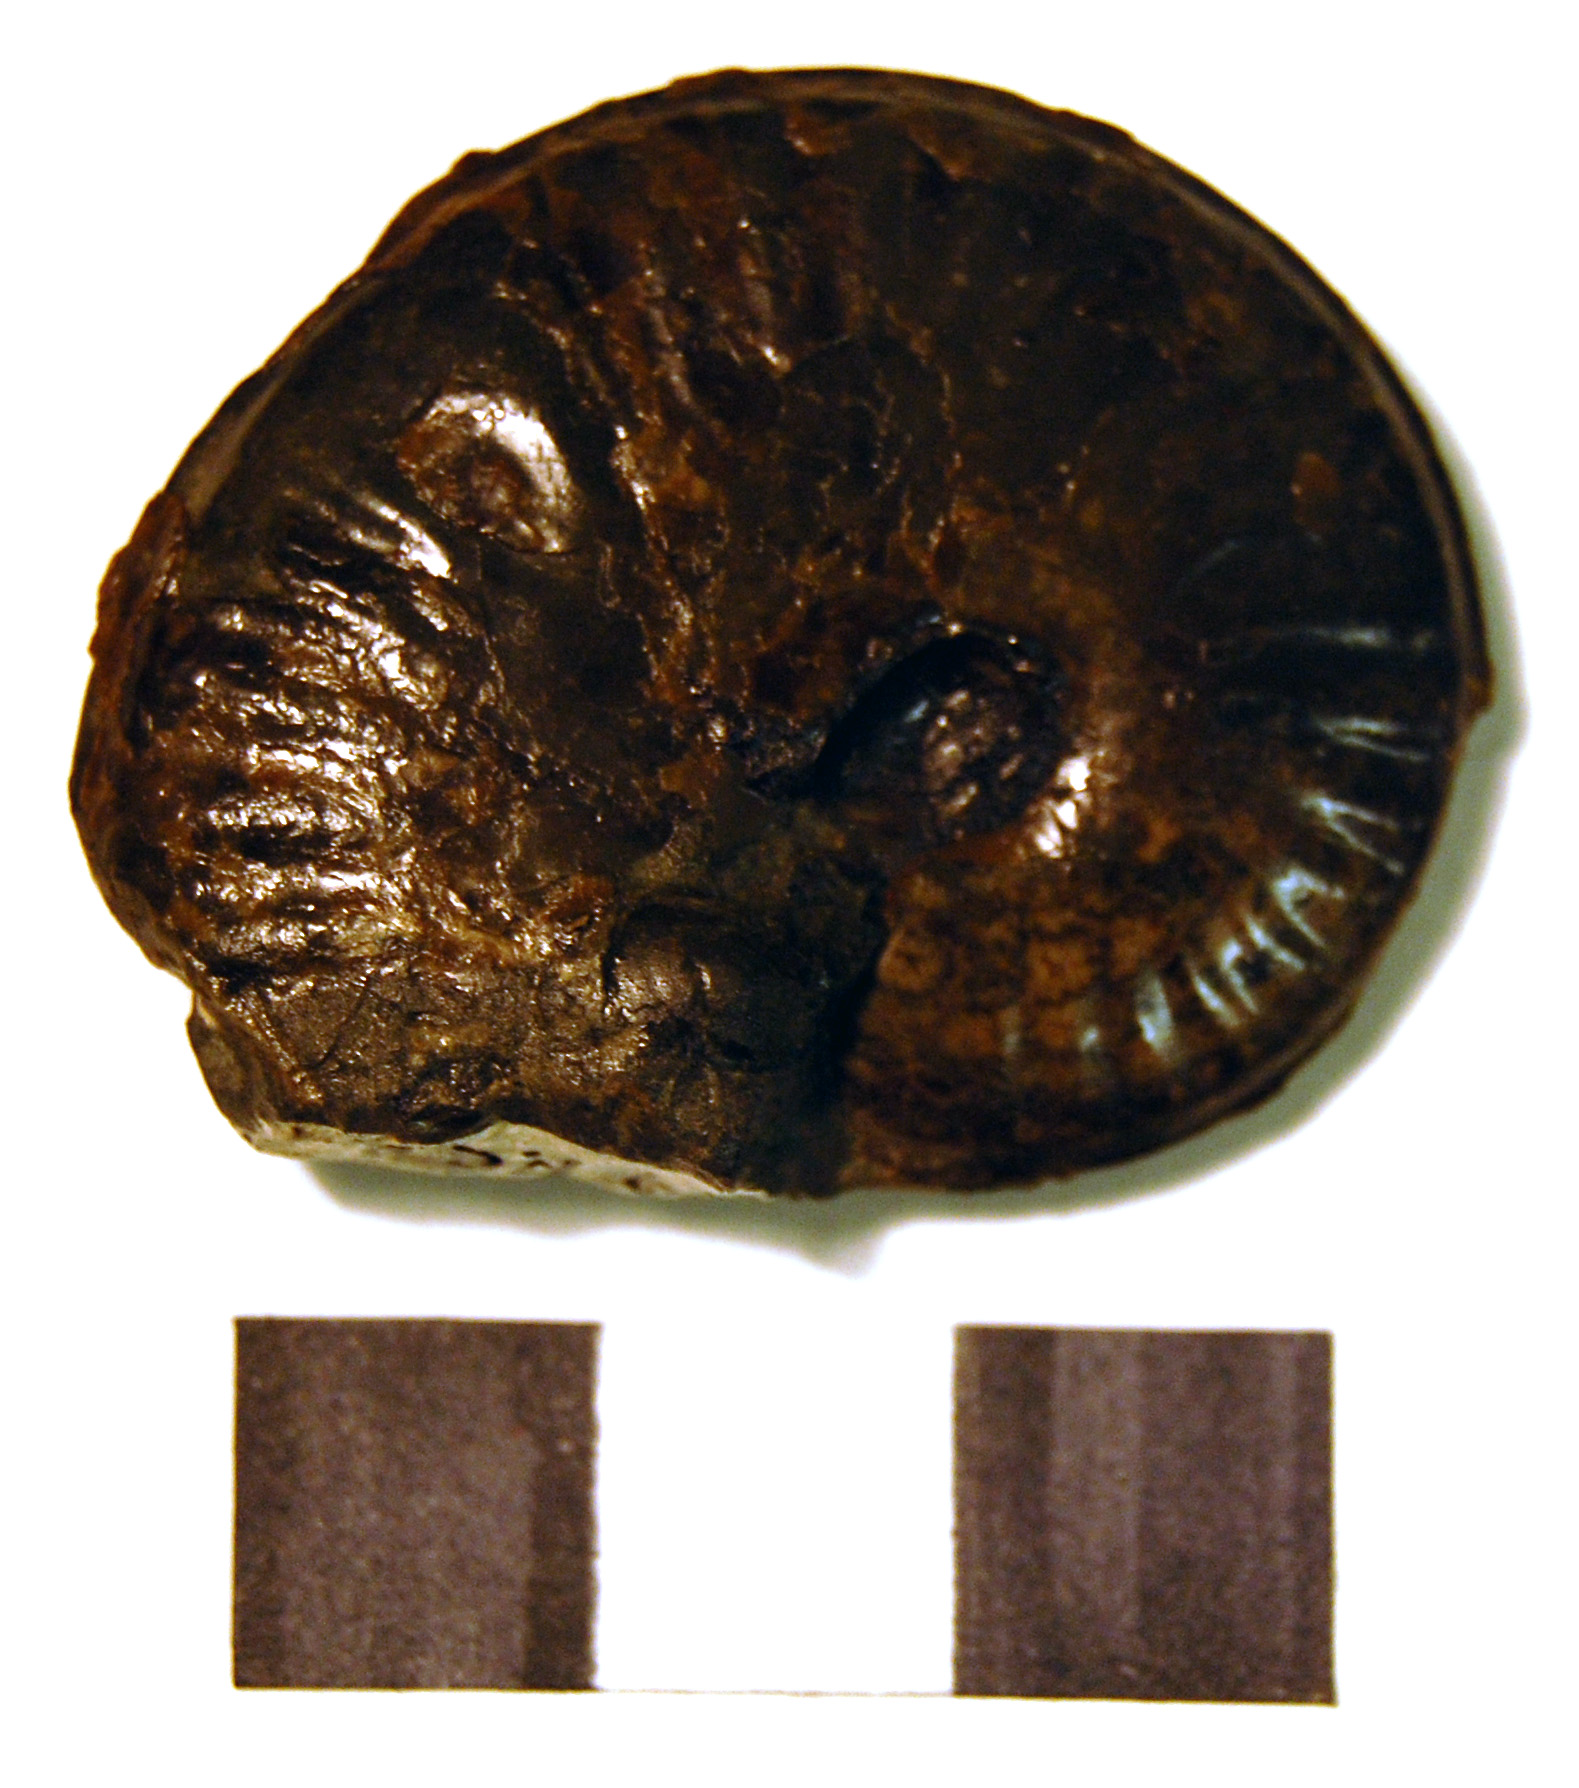 Photograph of ammounite: Pseudolioceras lythense